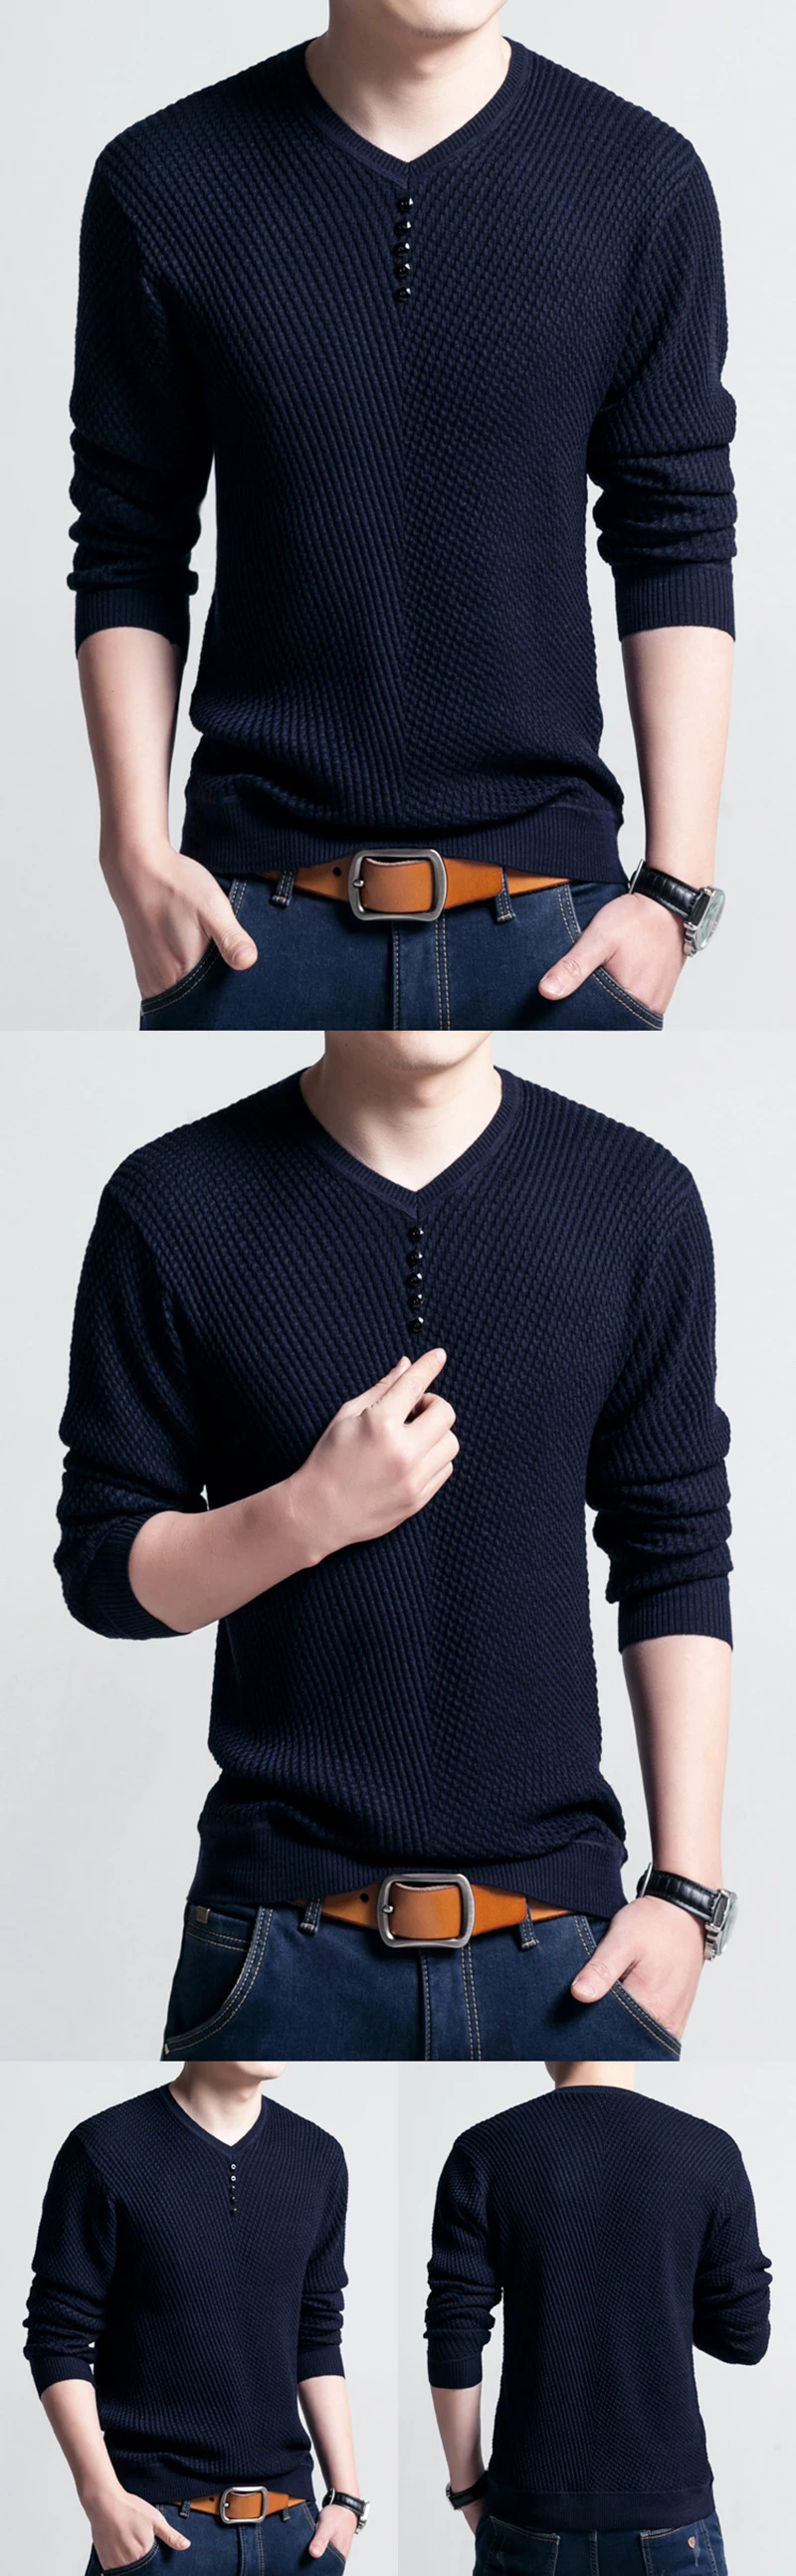 Трикотажная Мужская блузка облегающий свитер мужской однотонный v-образный вырез трикотажные пуловеры 2019 осень зима базовый трикотаж